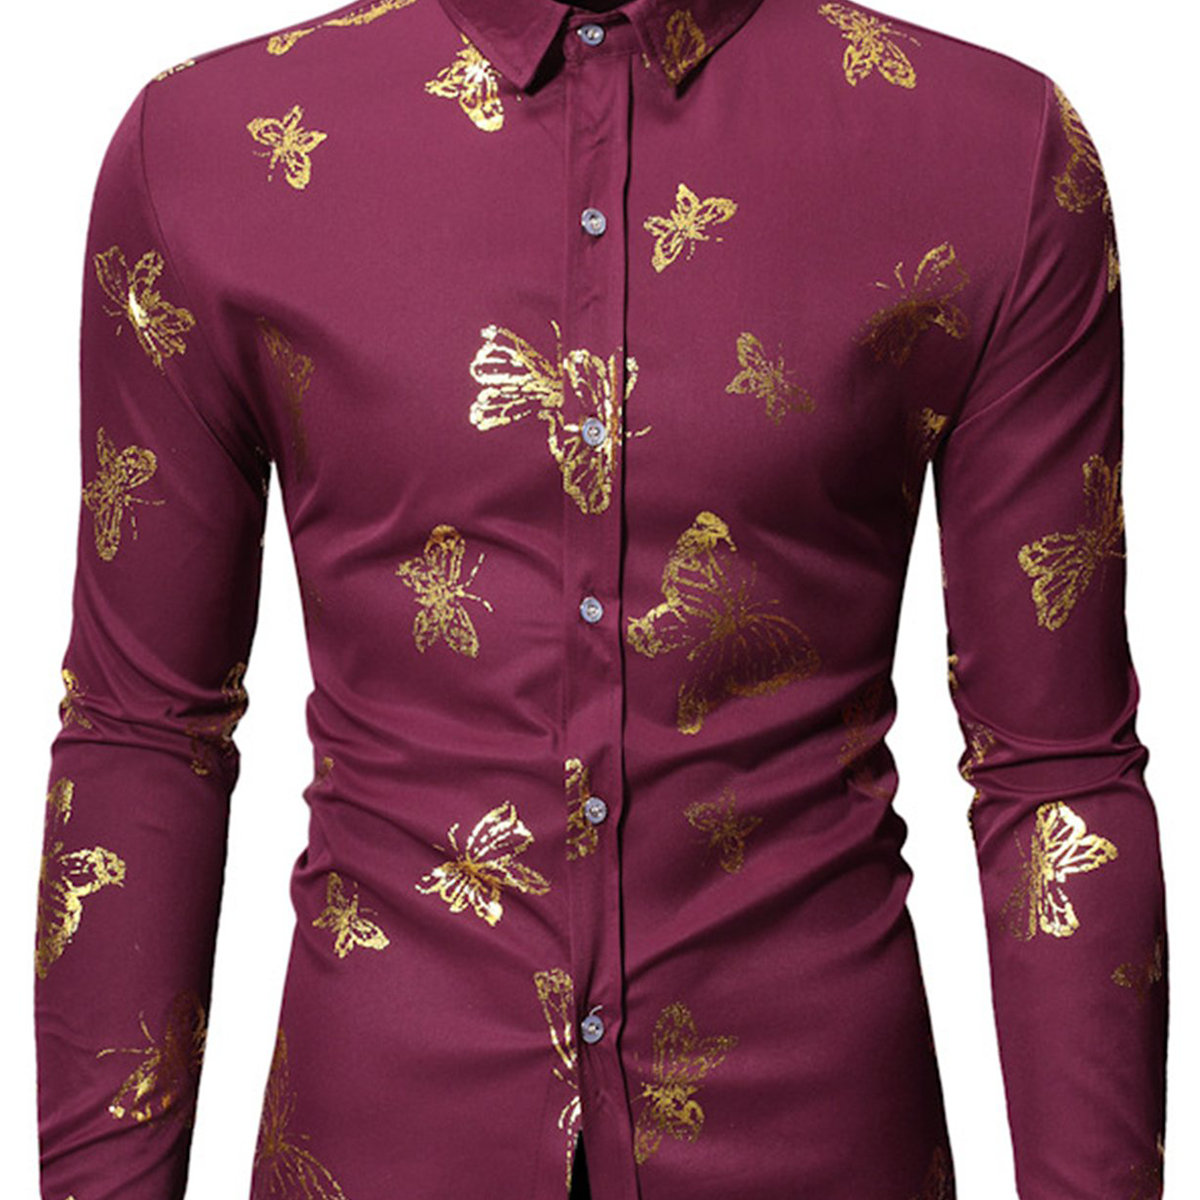 Men's Butterfly Print Long Sleeve Casual Button Dress Shirt